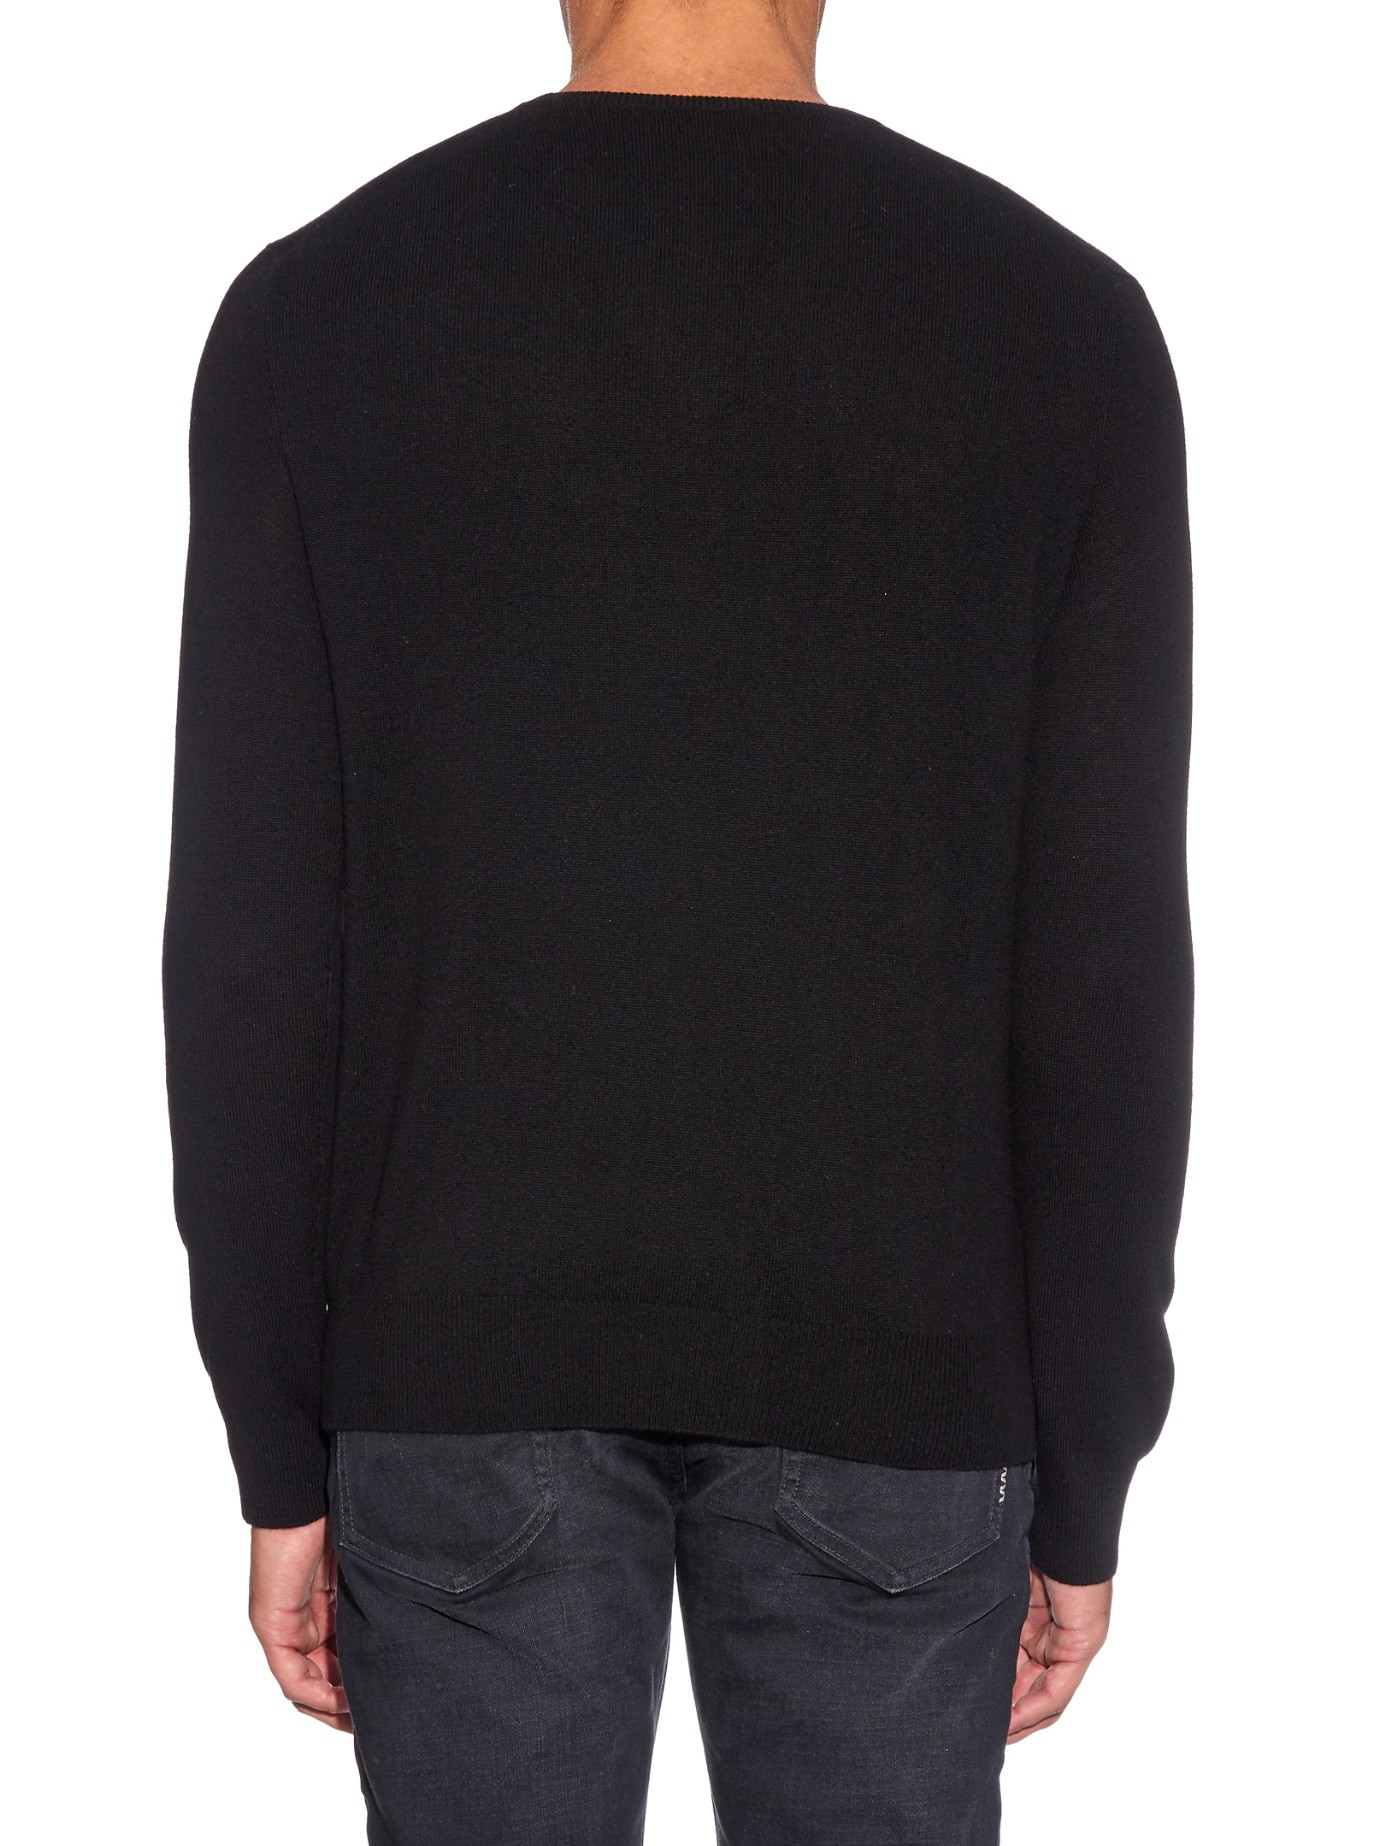 Lyst - Polo ralph lauren V-neck Long-sleeved Wool Sweater in Black for Men